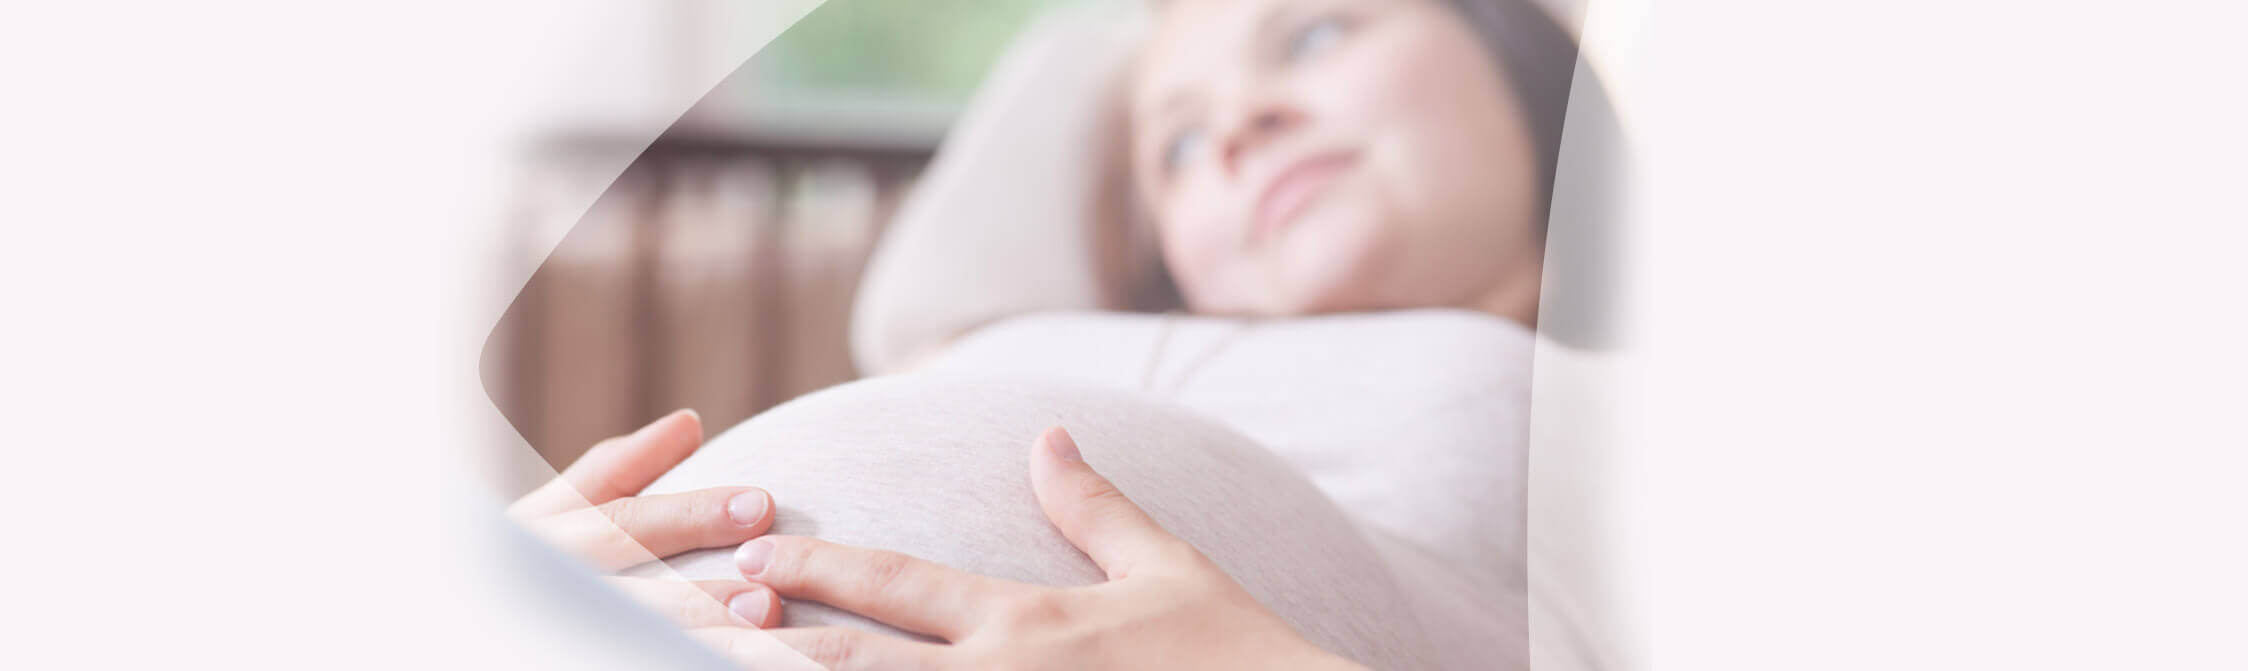 Zwangere vrouw ligt op de sofa en legt de handen rond de buik